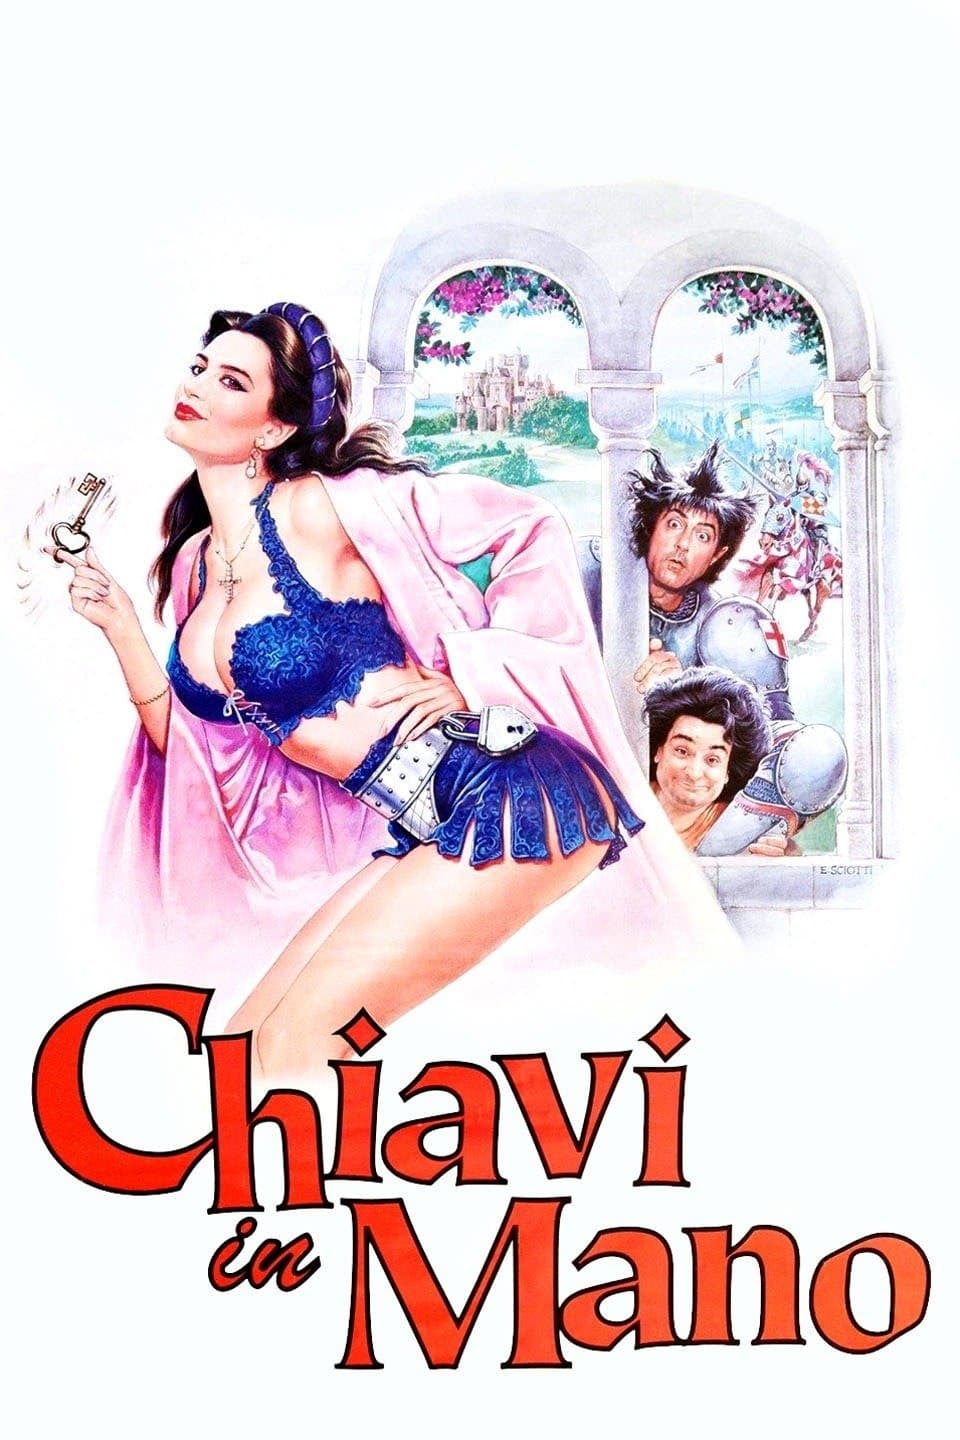 Chiavi in mano (1996)